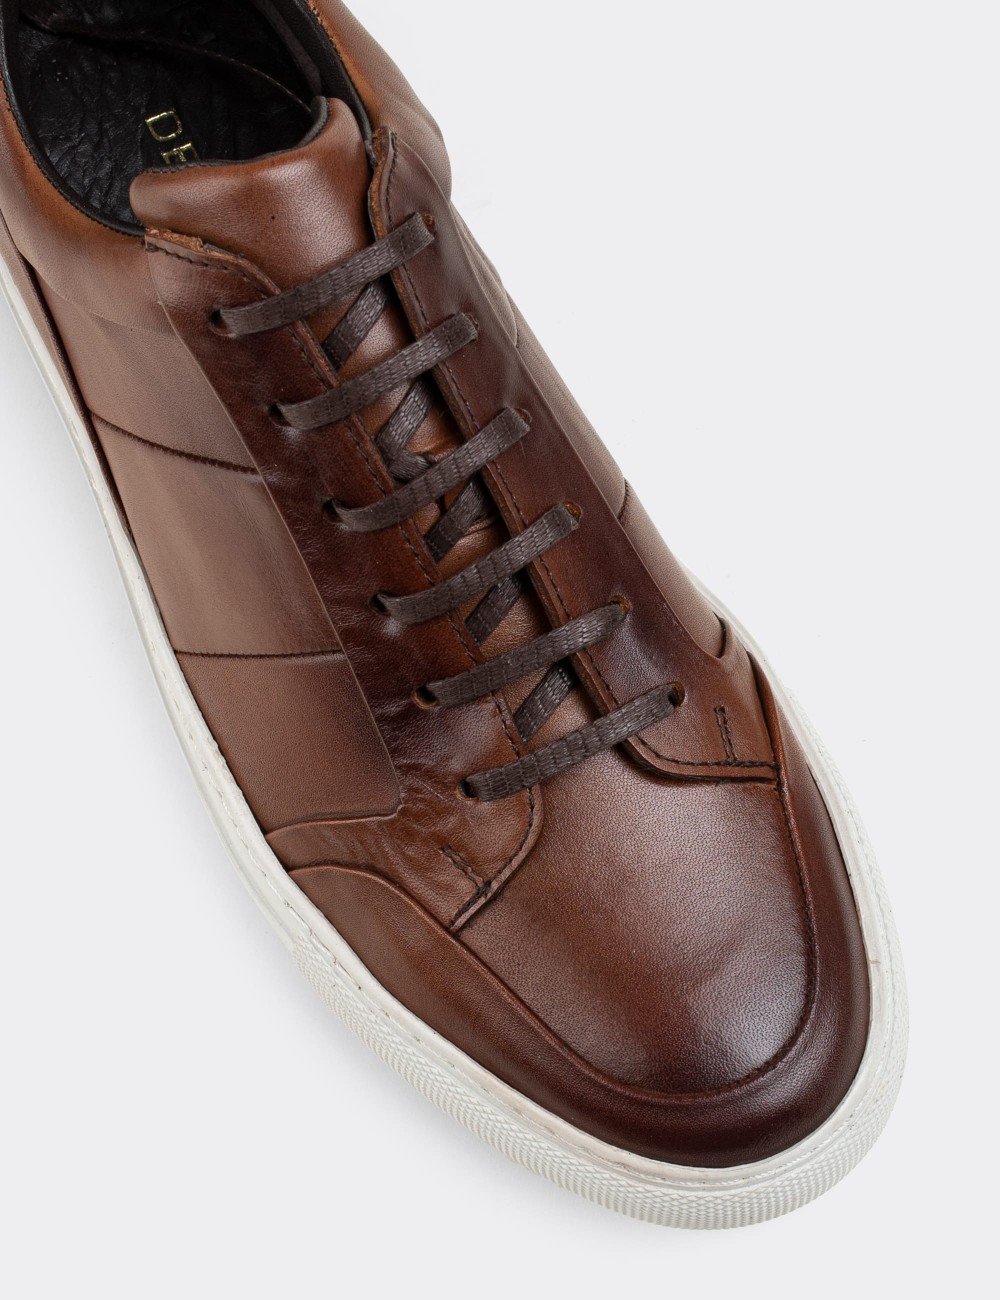 Tan  Leather Sneakers - 01723MTBAC01